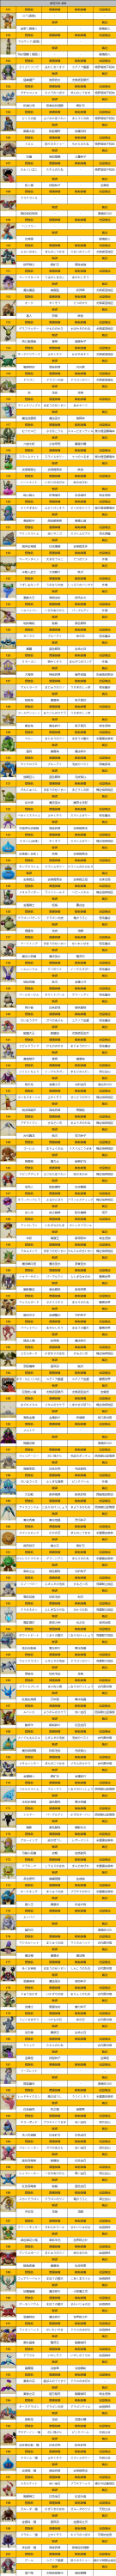 勇者斗恶龙11全怪物中文介绍 怪物掉落及分布一览